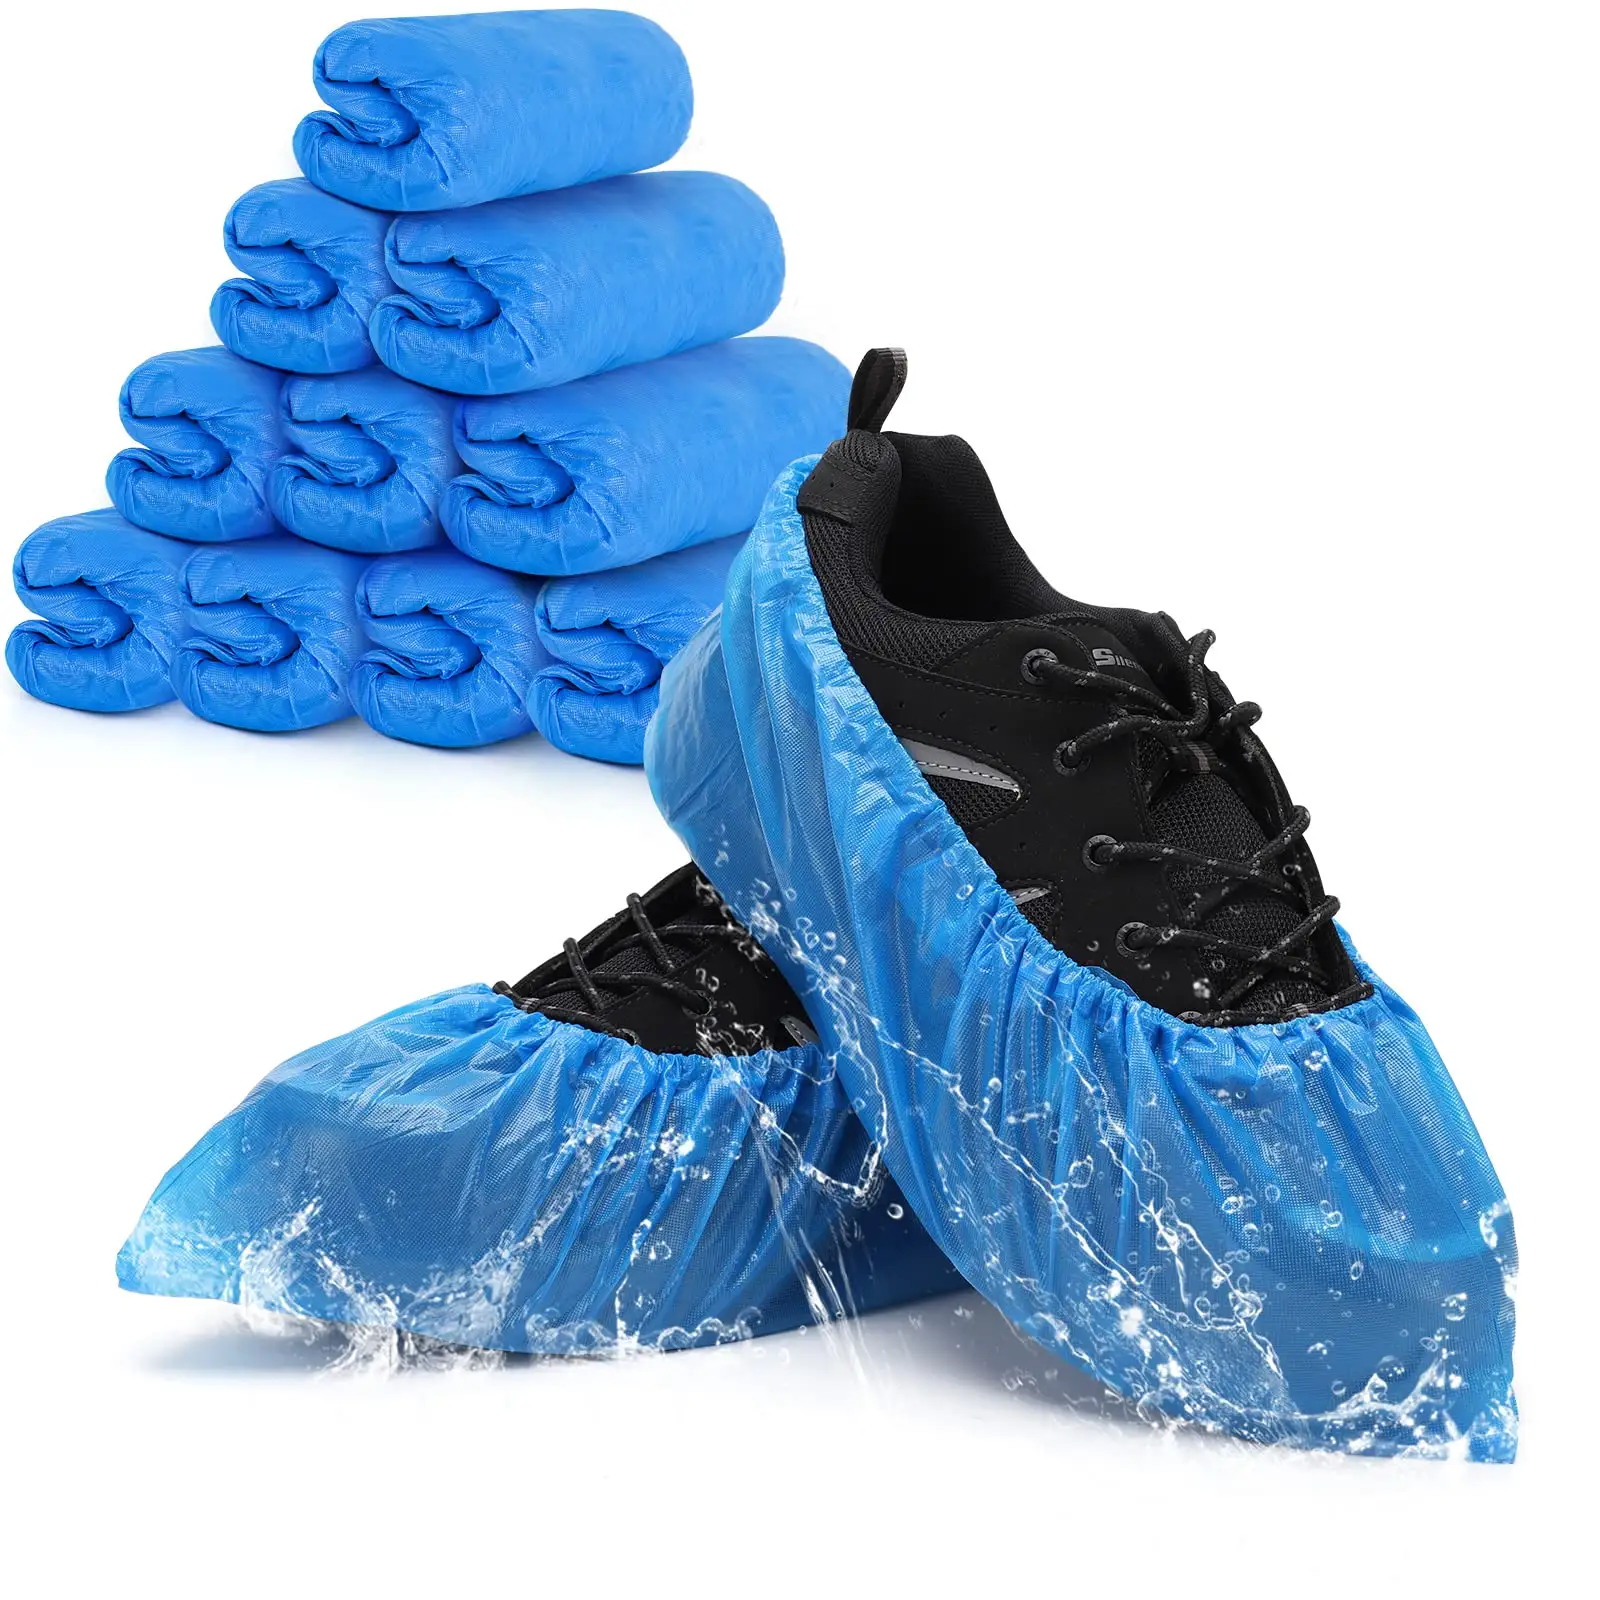 CPE Cubierta de zapatos Desechable Impermeable A prueba de polvo PE Cubiertas de zapatos de plástico